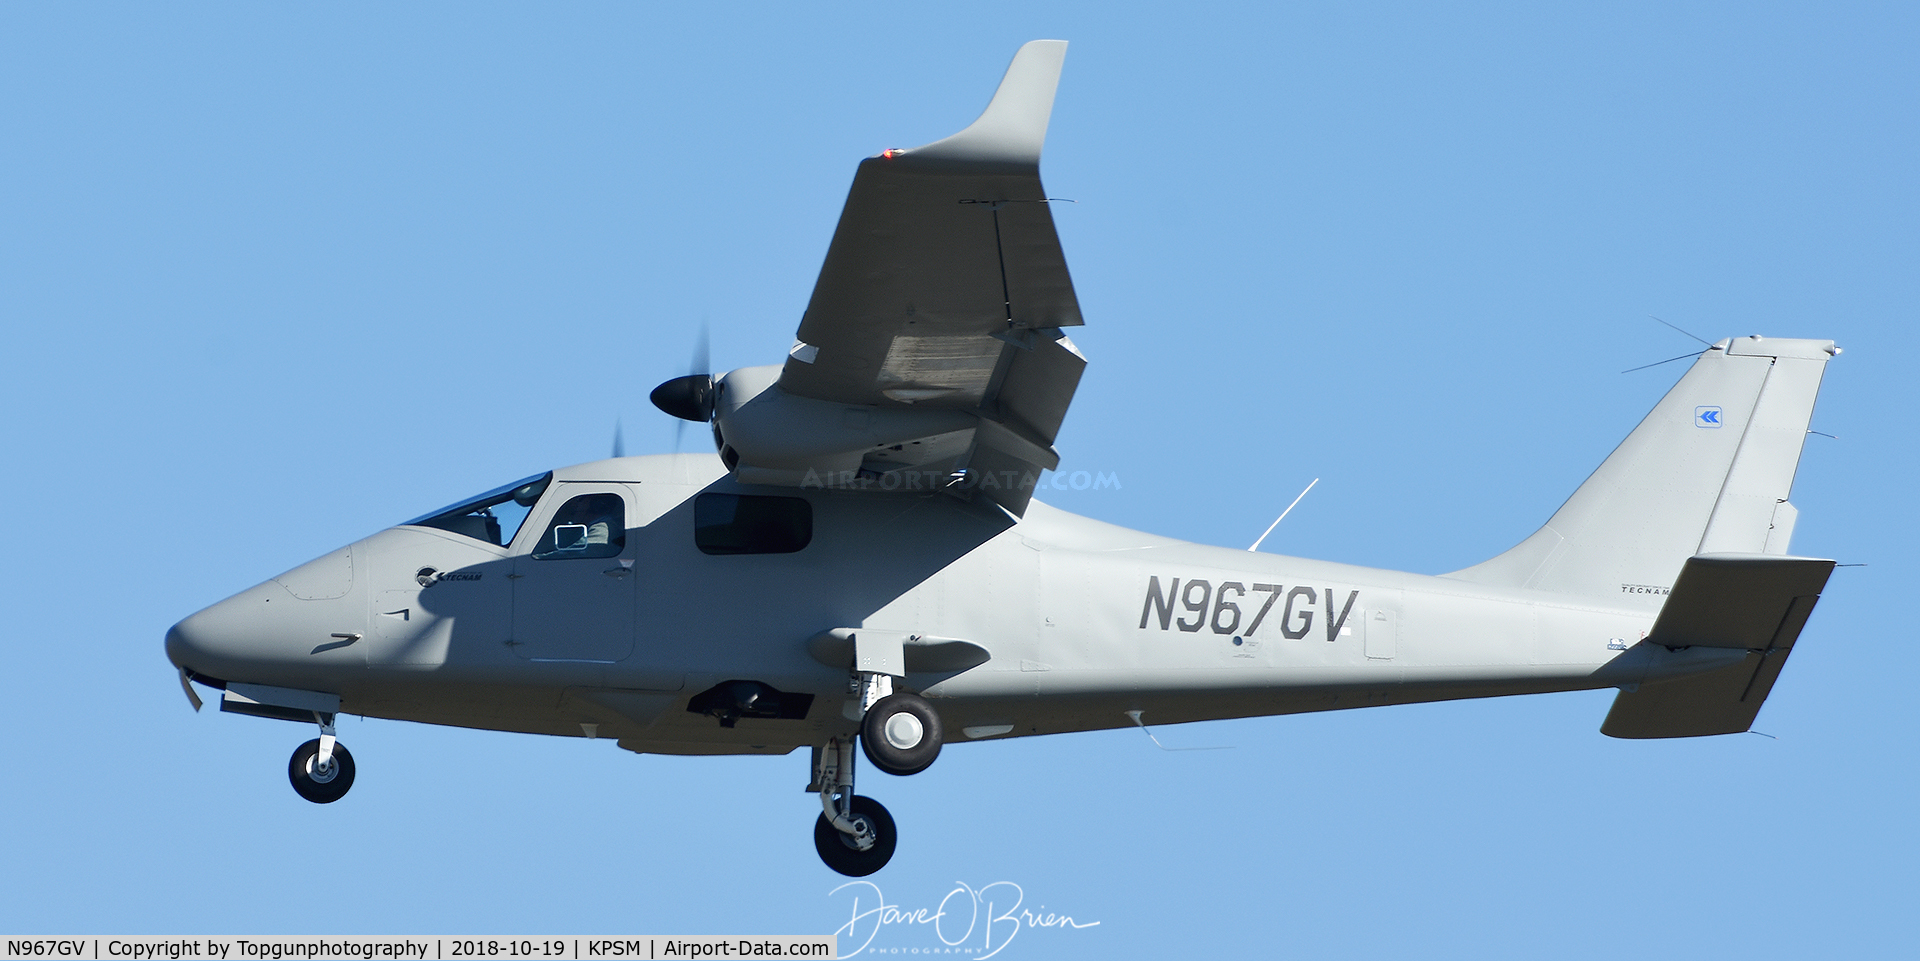 N967GV, 2018 Tecnam P-2006T C/N 244/US, Coming in to land RW34